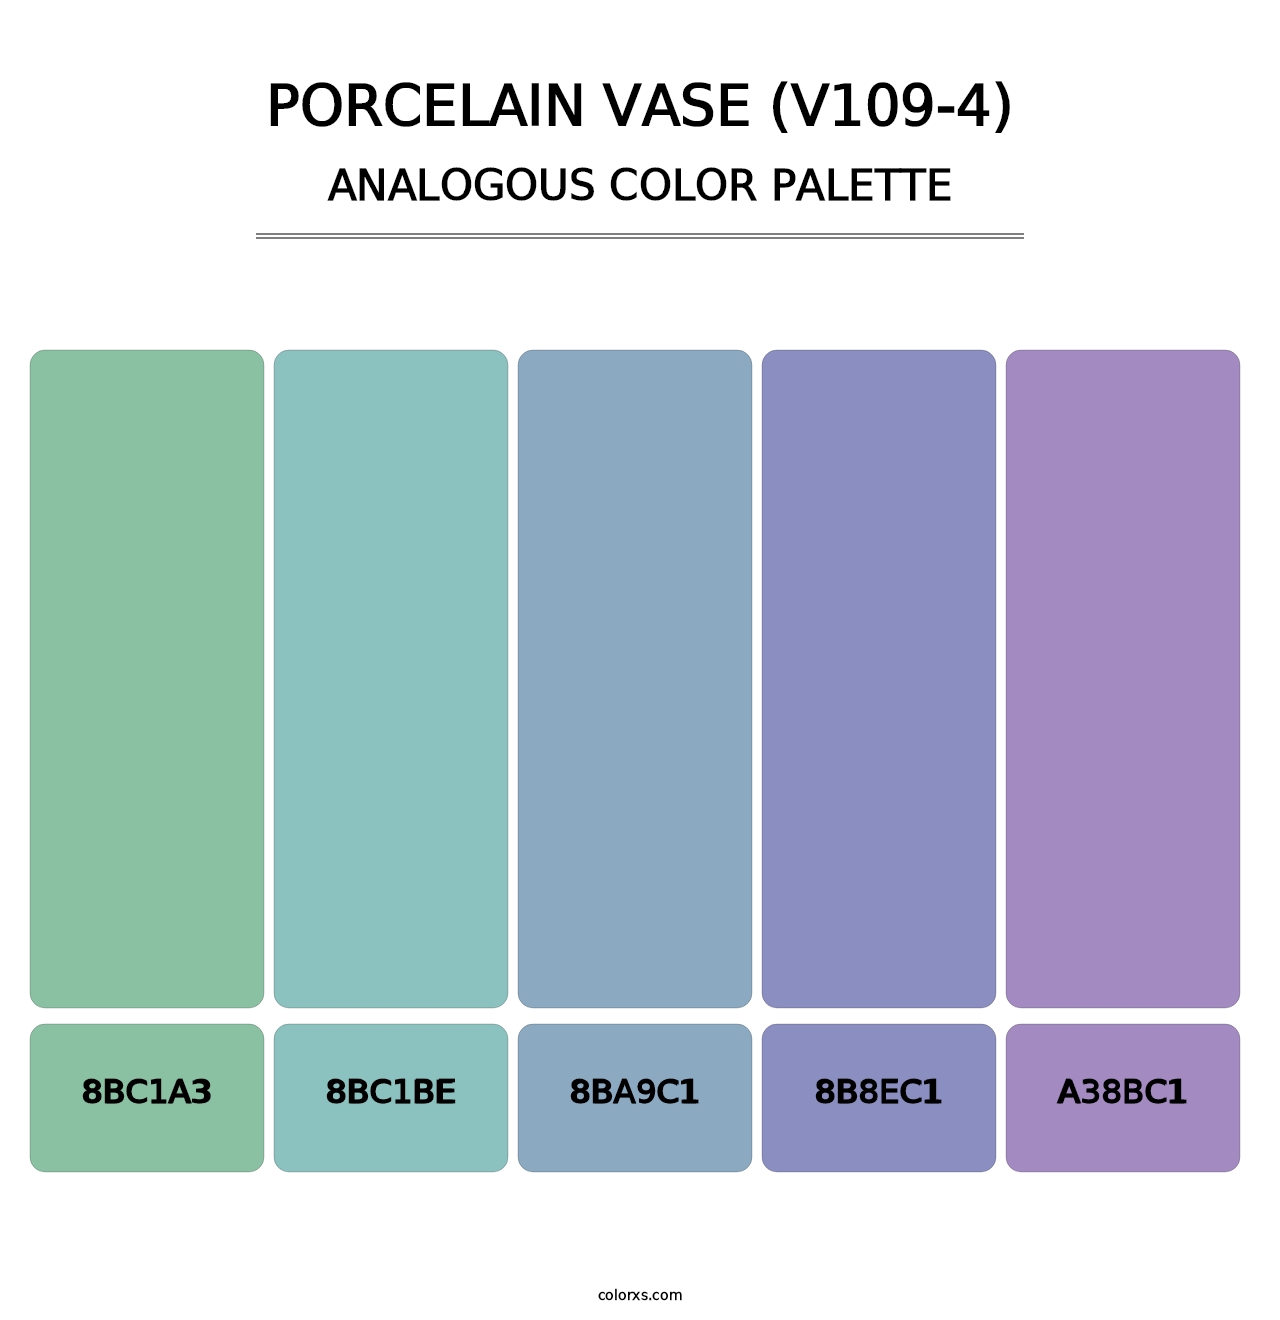 Porcelain Vase (V109-4) - Analogous Color Palette